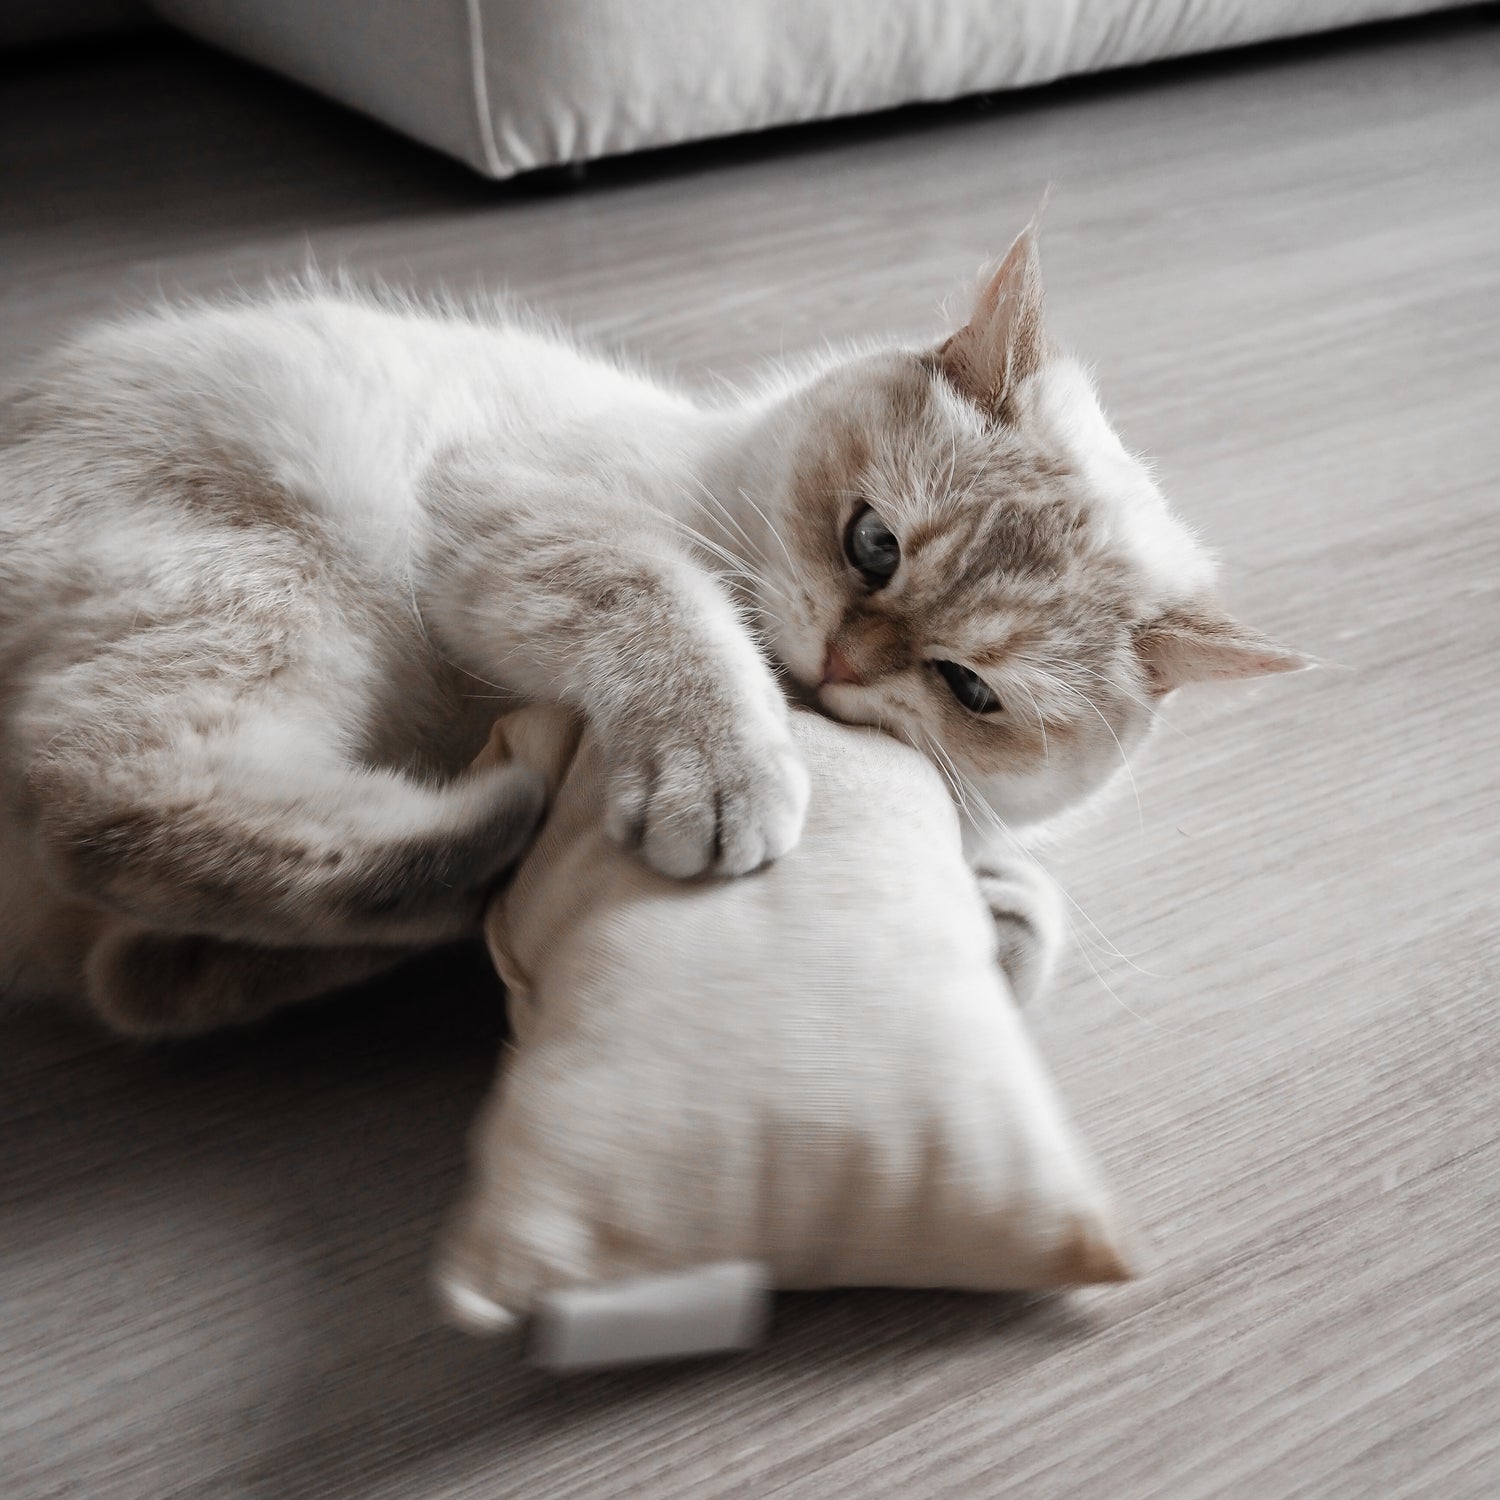 Katze spielt mit beigem Spielkissen, welches mit natürlichem Baldrian gefüllt ist.